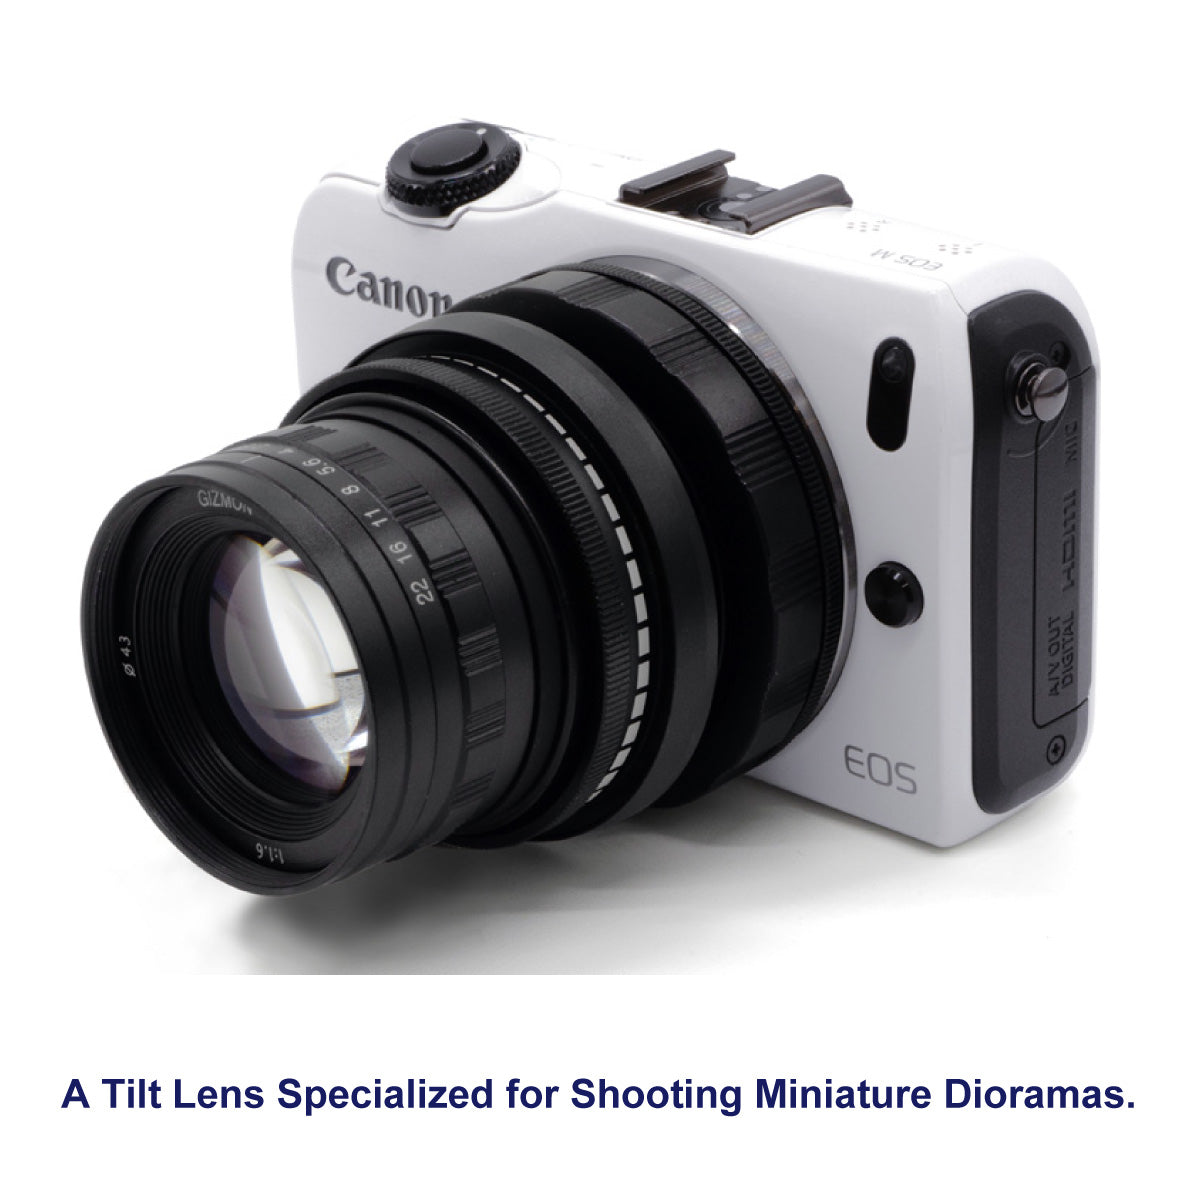 GIZMON Miniature Tilt Lens